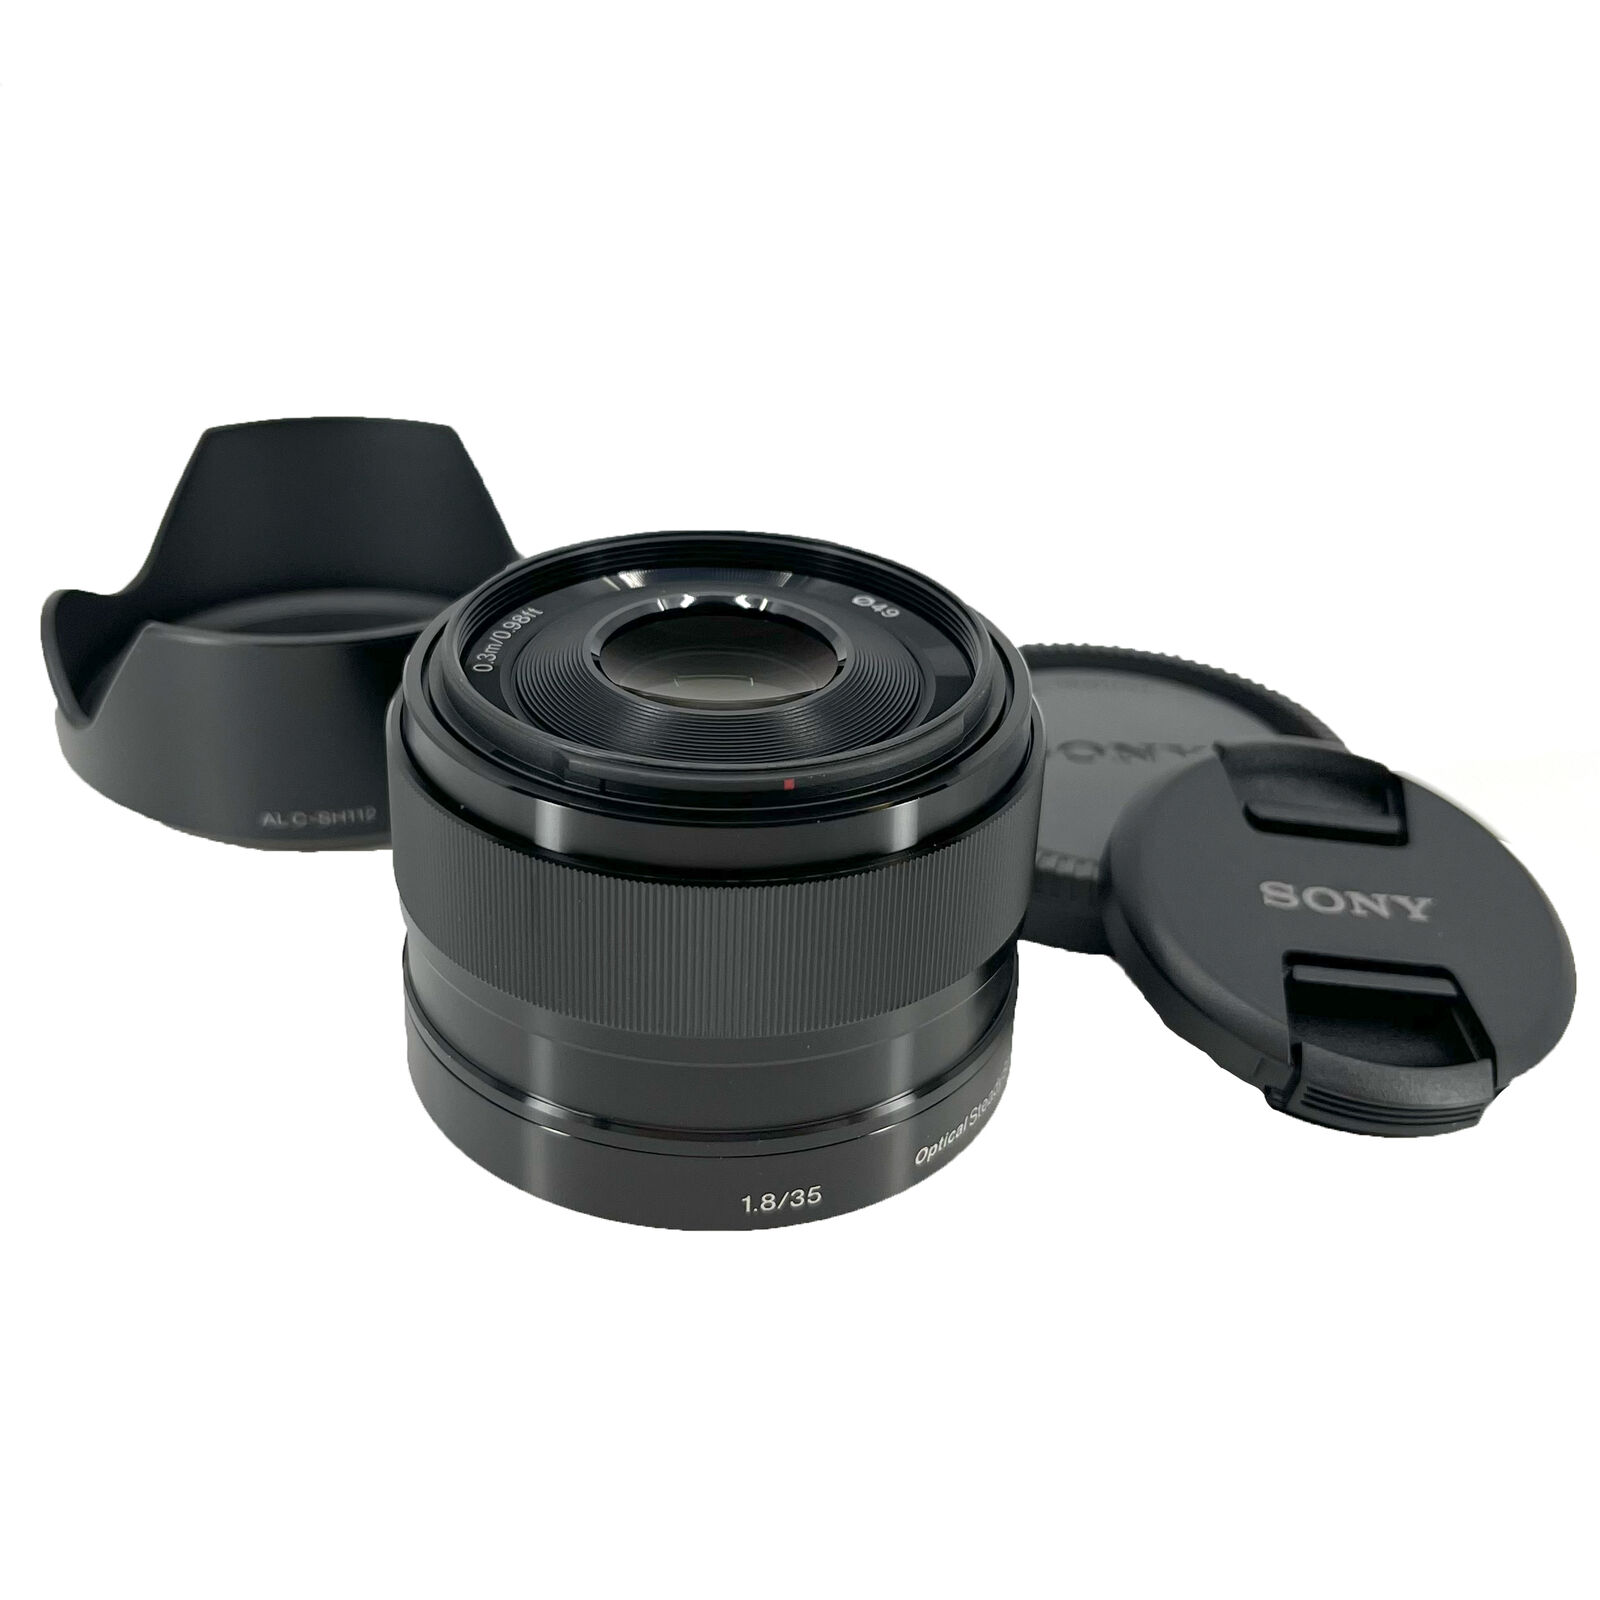 Sony SEL 35mm F/1.8 OSS Lens for sale online | eBay